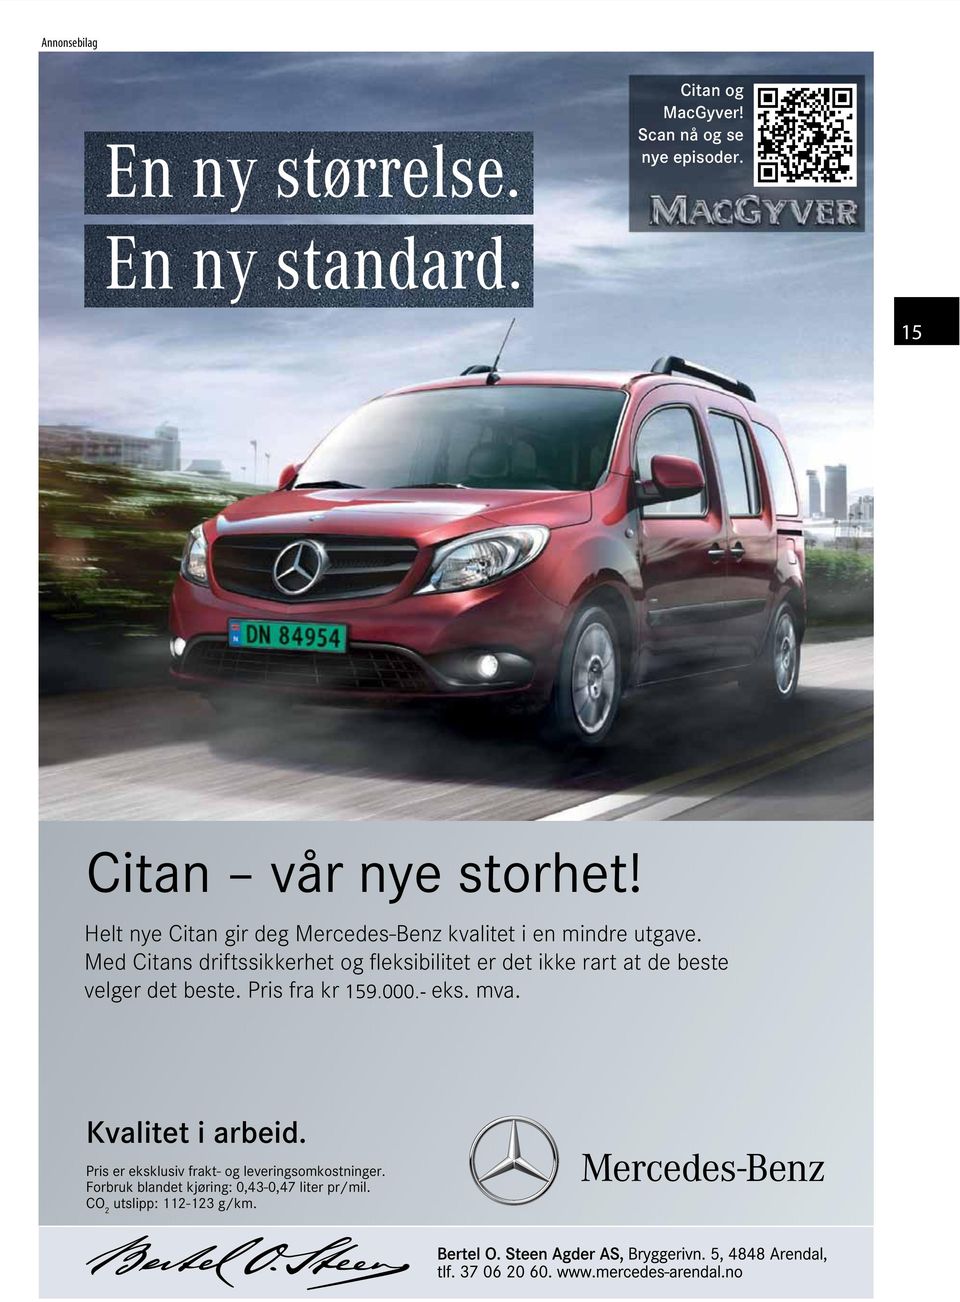 Helt nye Citan gir deg Mercedes-Benz kvalitet ienmindre utgave. 159.000.